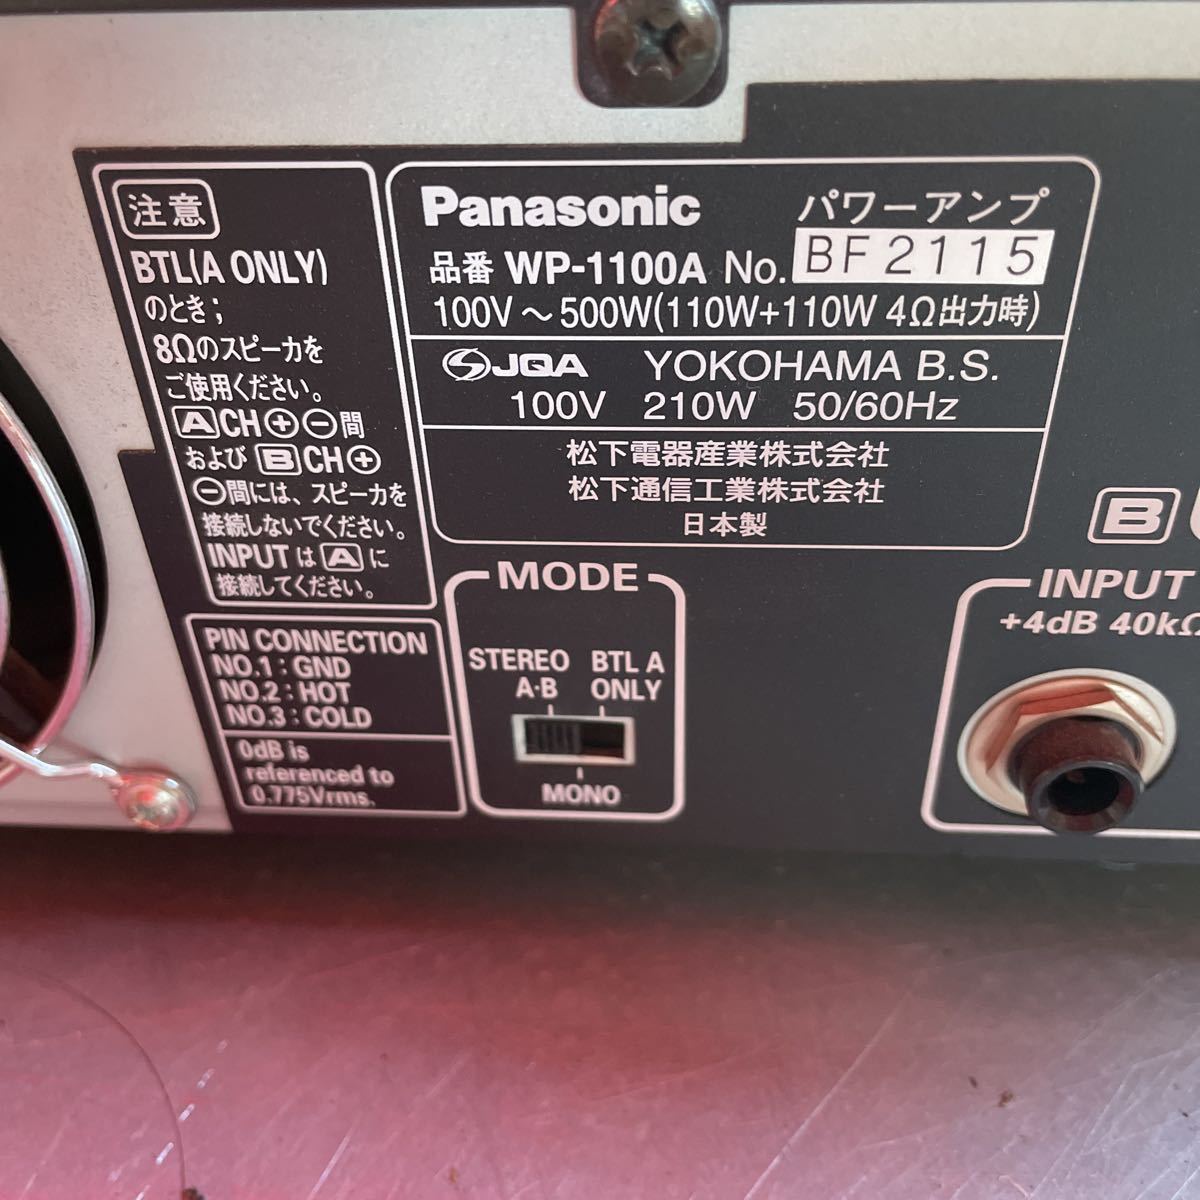 NO.646 RAMSA WP-1100A パナソニック Panasonic パワーアンプ(110W+